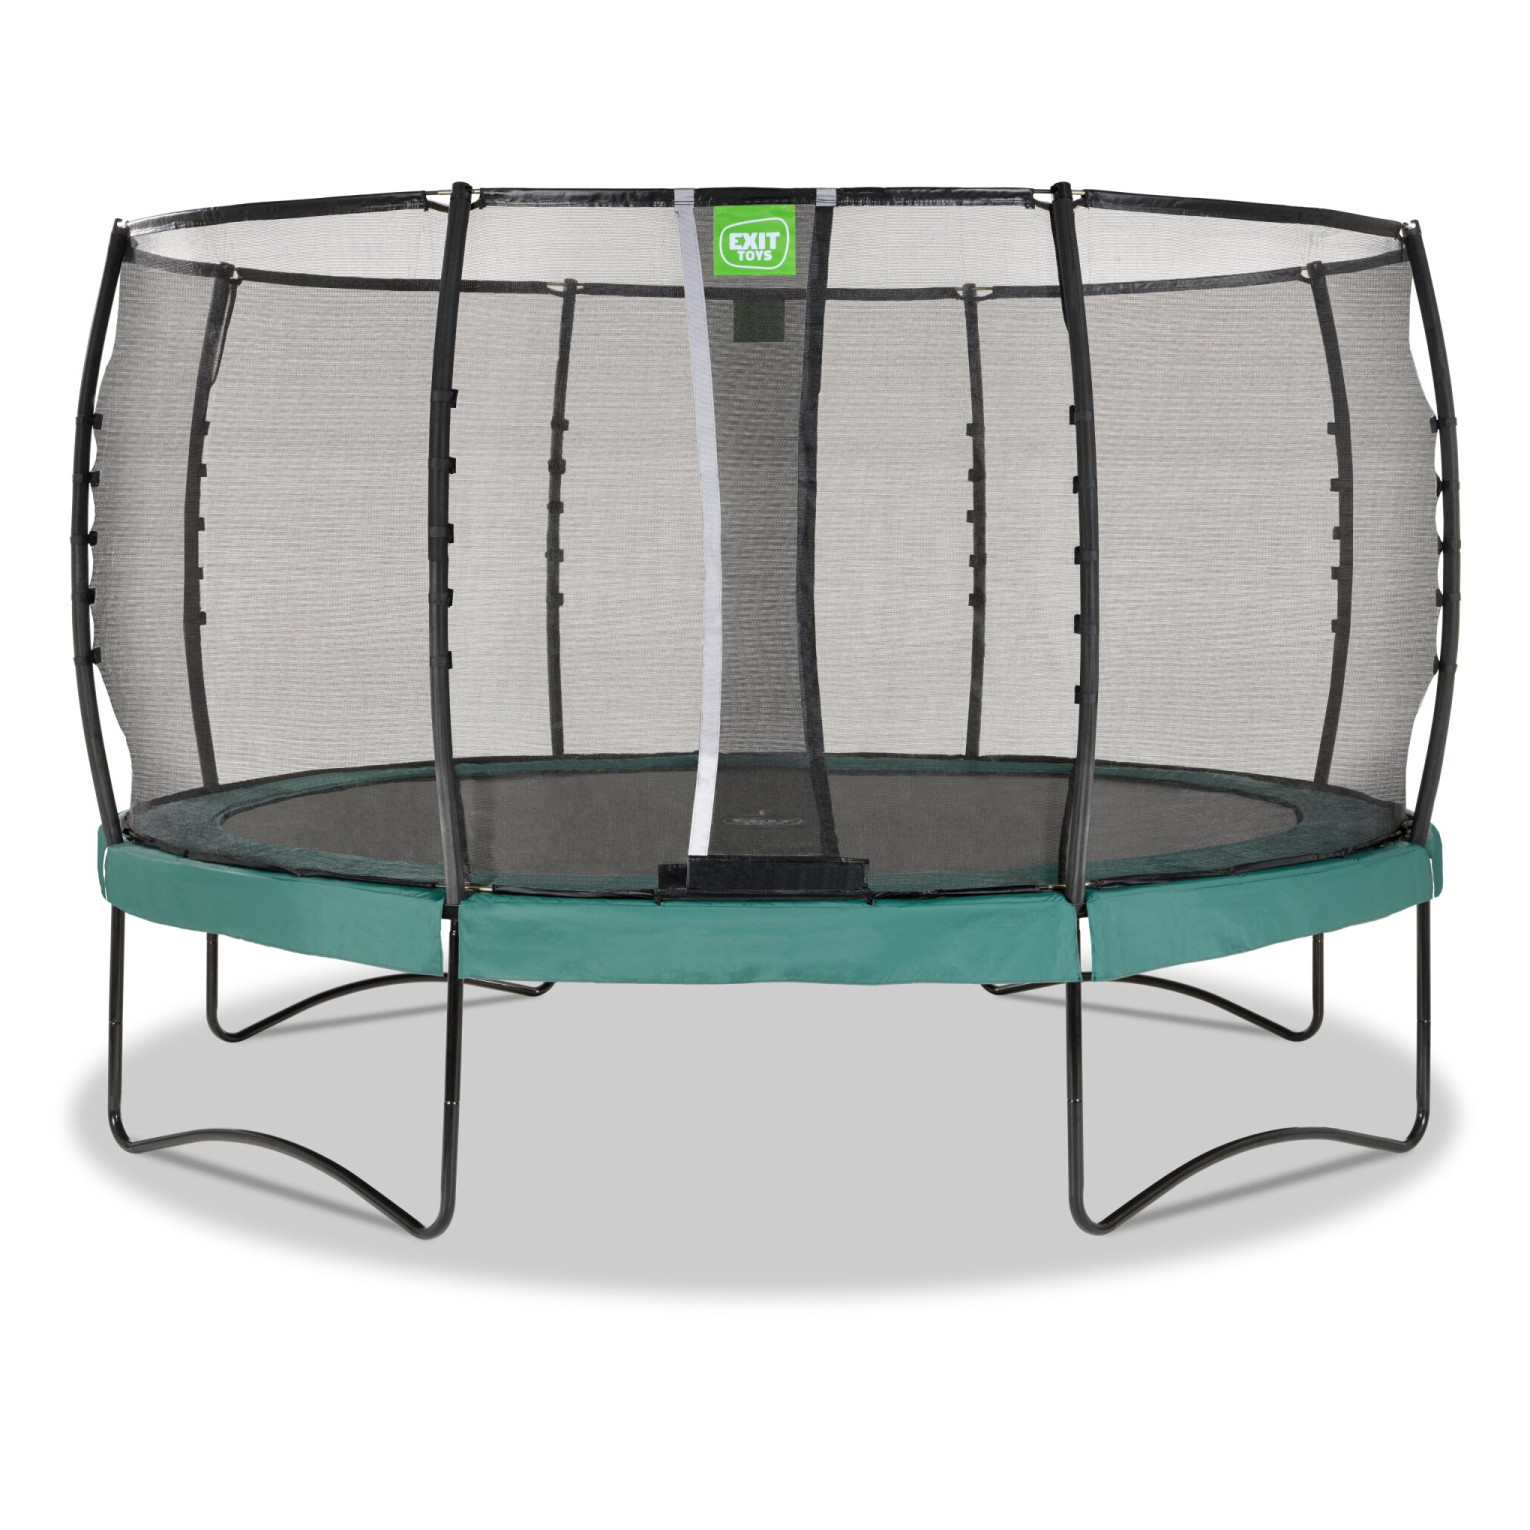 EXIT Allure Premium trampoline ø427cm - groen